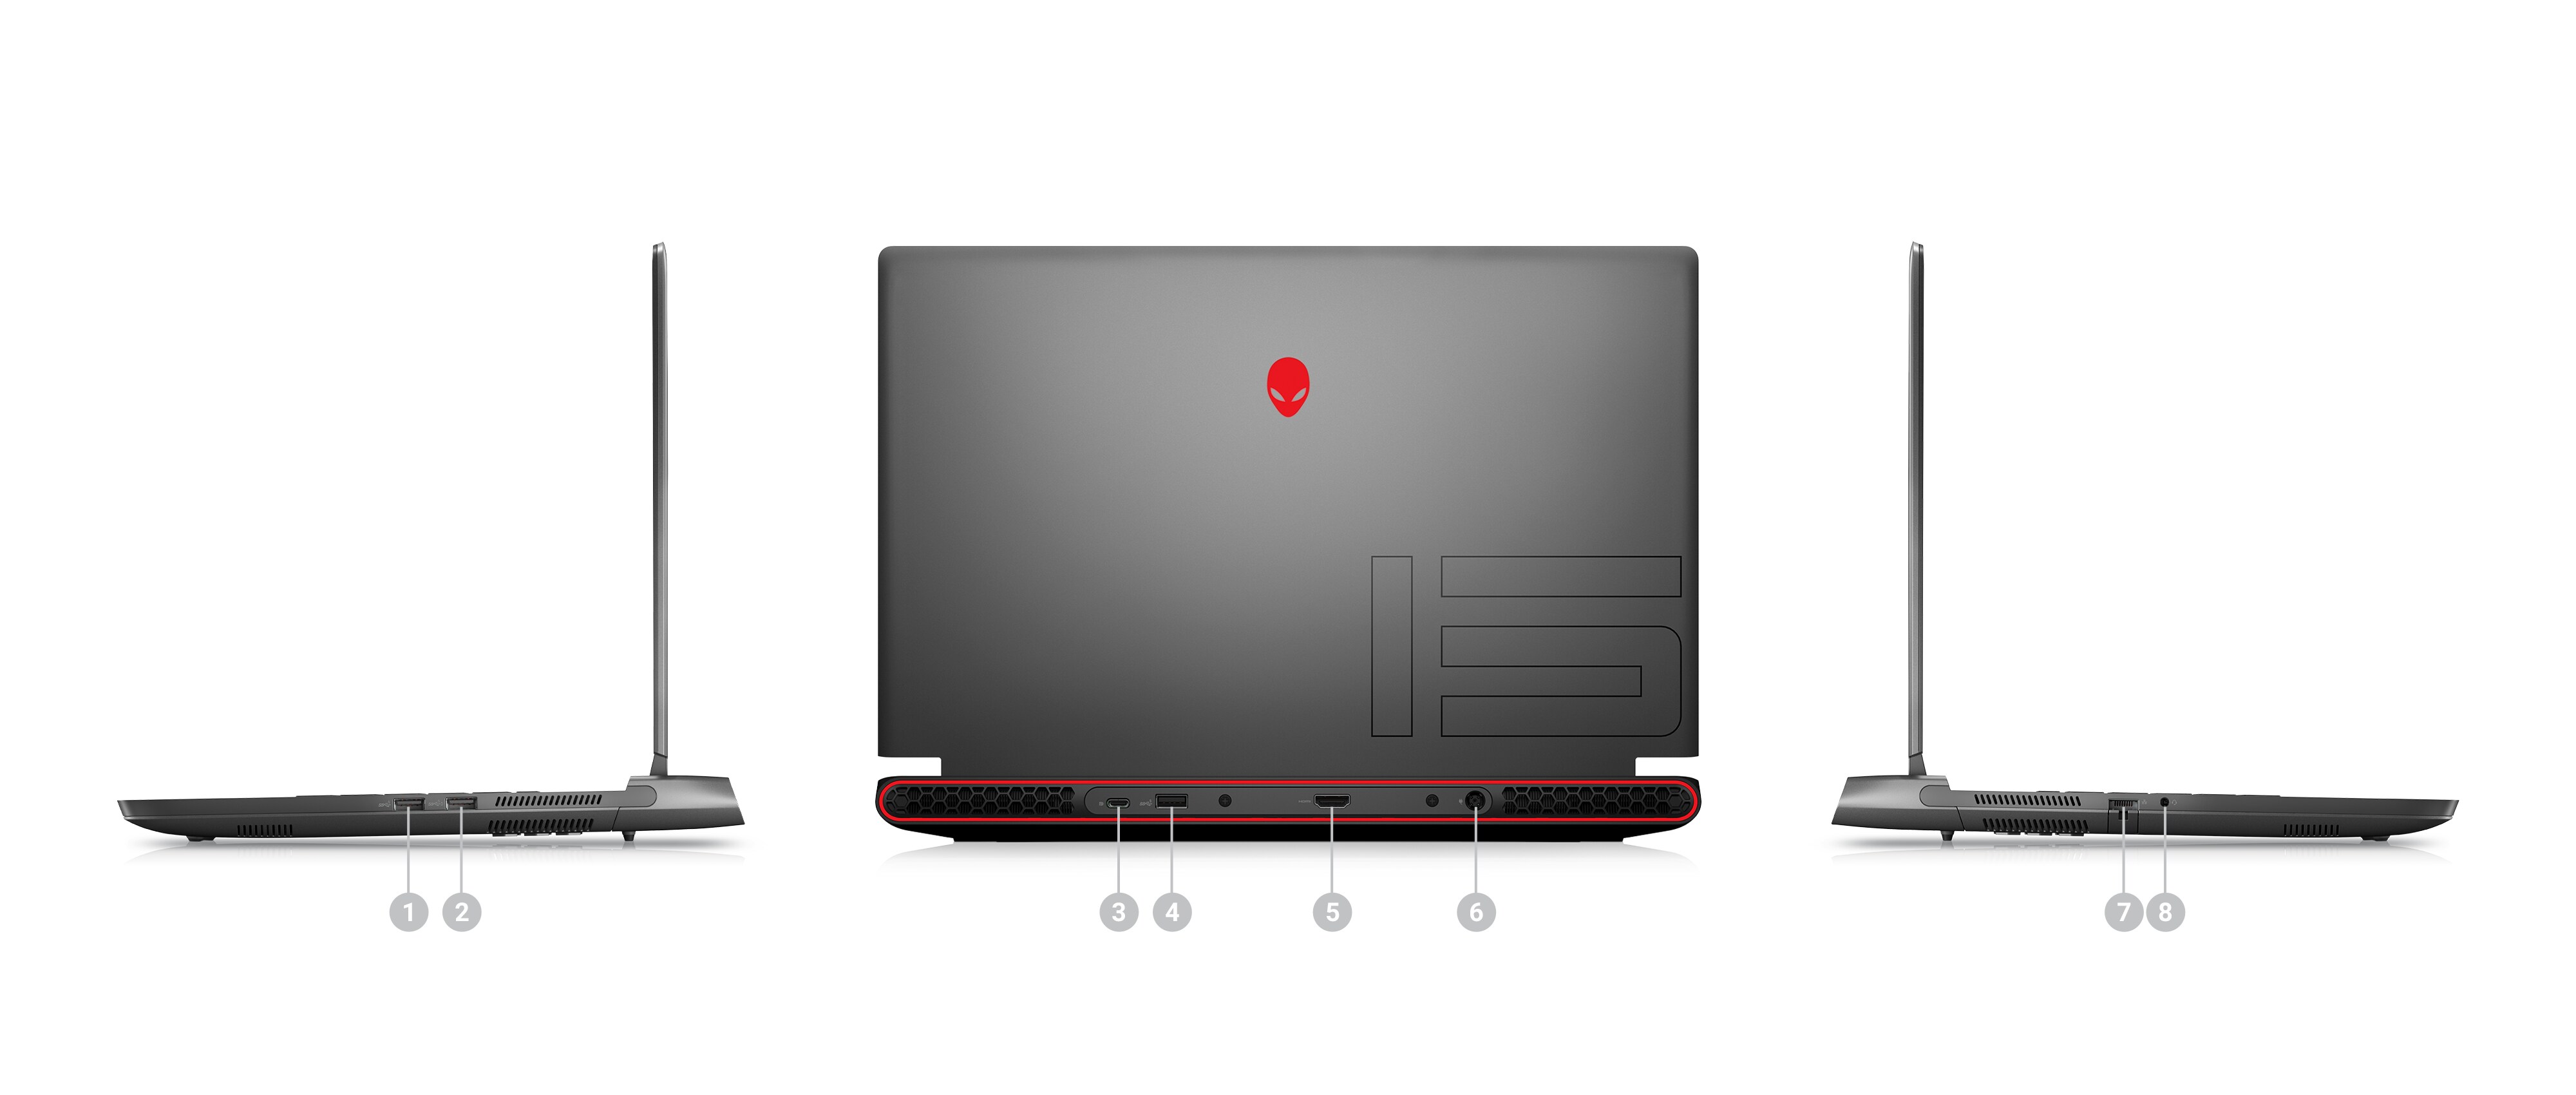 Bild mit drei Dell Alienware m15 R7 Gaminglaptops mit Zahlen von 1 bis 8 zur Kennzeichnung der Anschlüsse und Steckplätze des Produkts